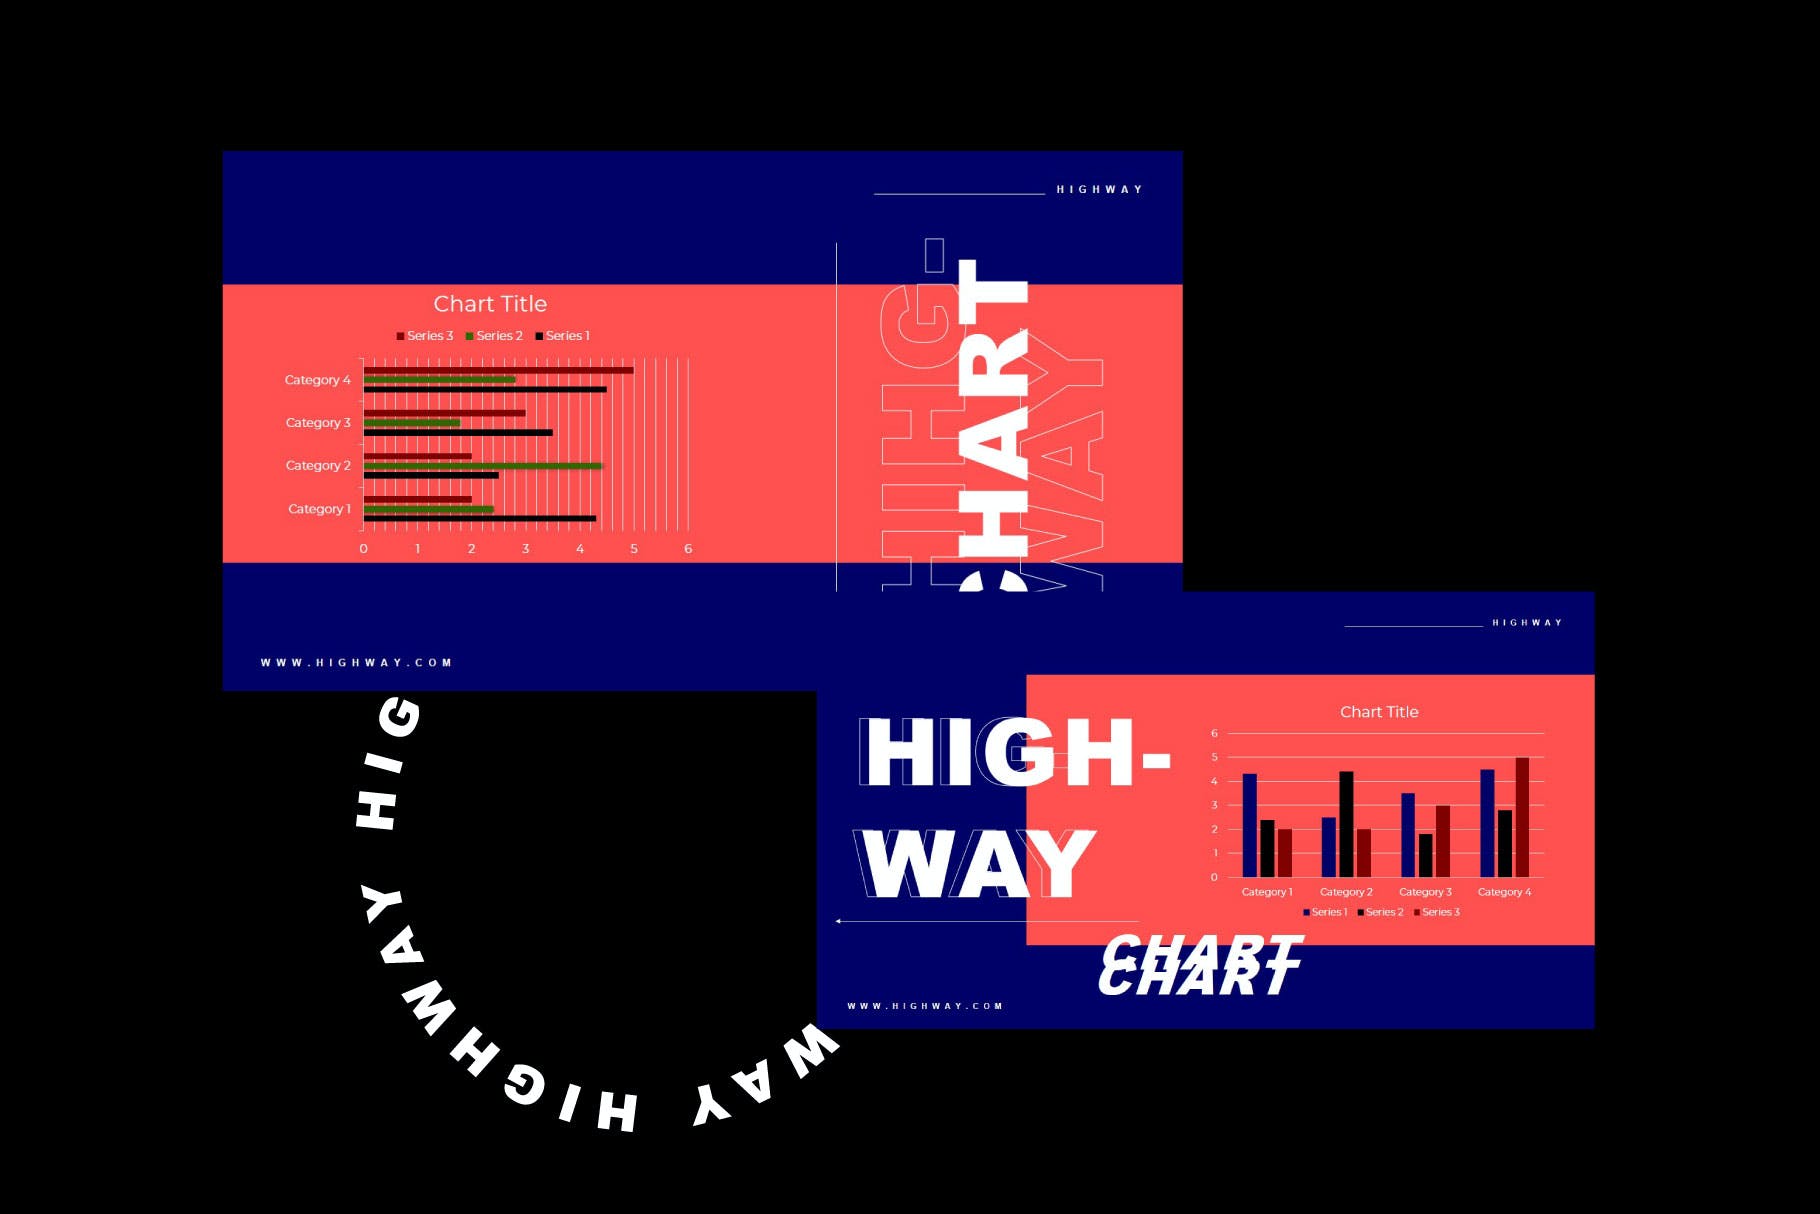 音乐活动午夜派对Powerpoint模板下载 HIGHWAY – Powerpoint Template设计素材模板